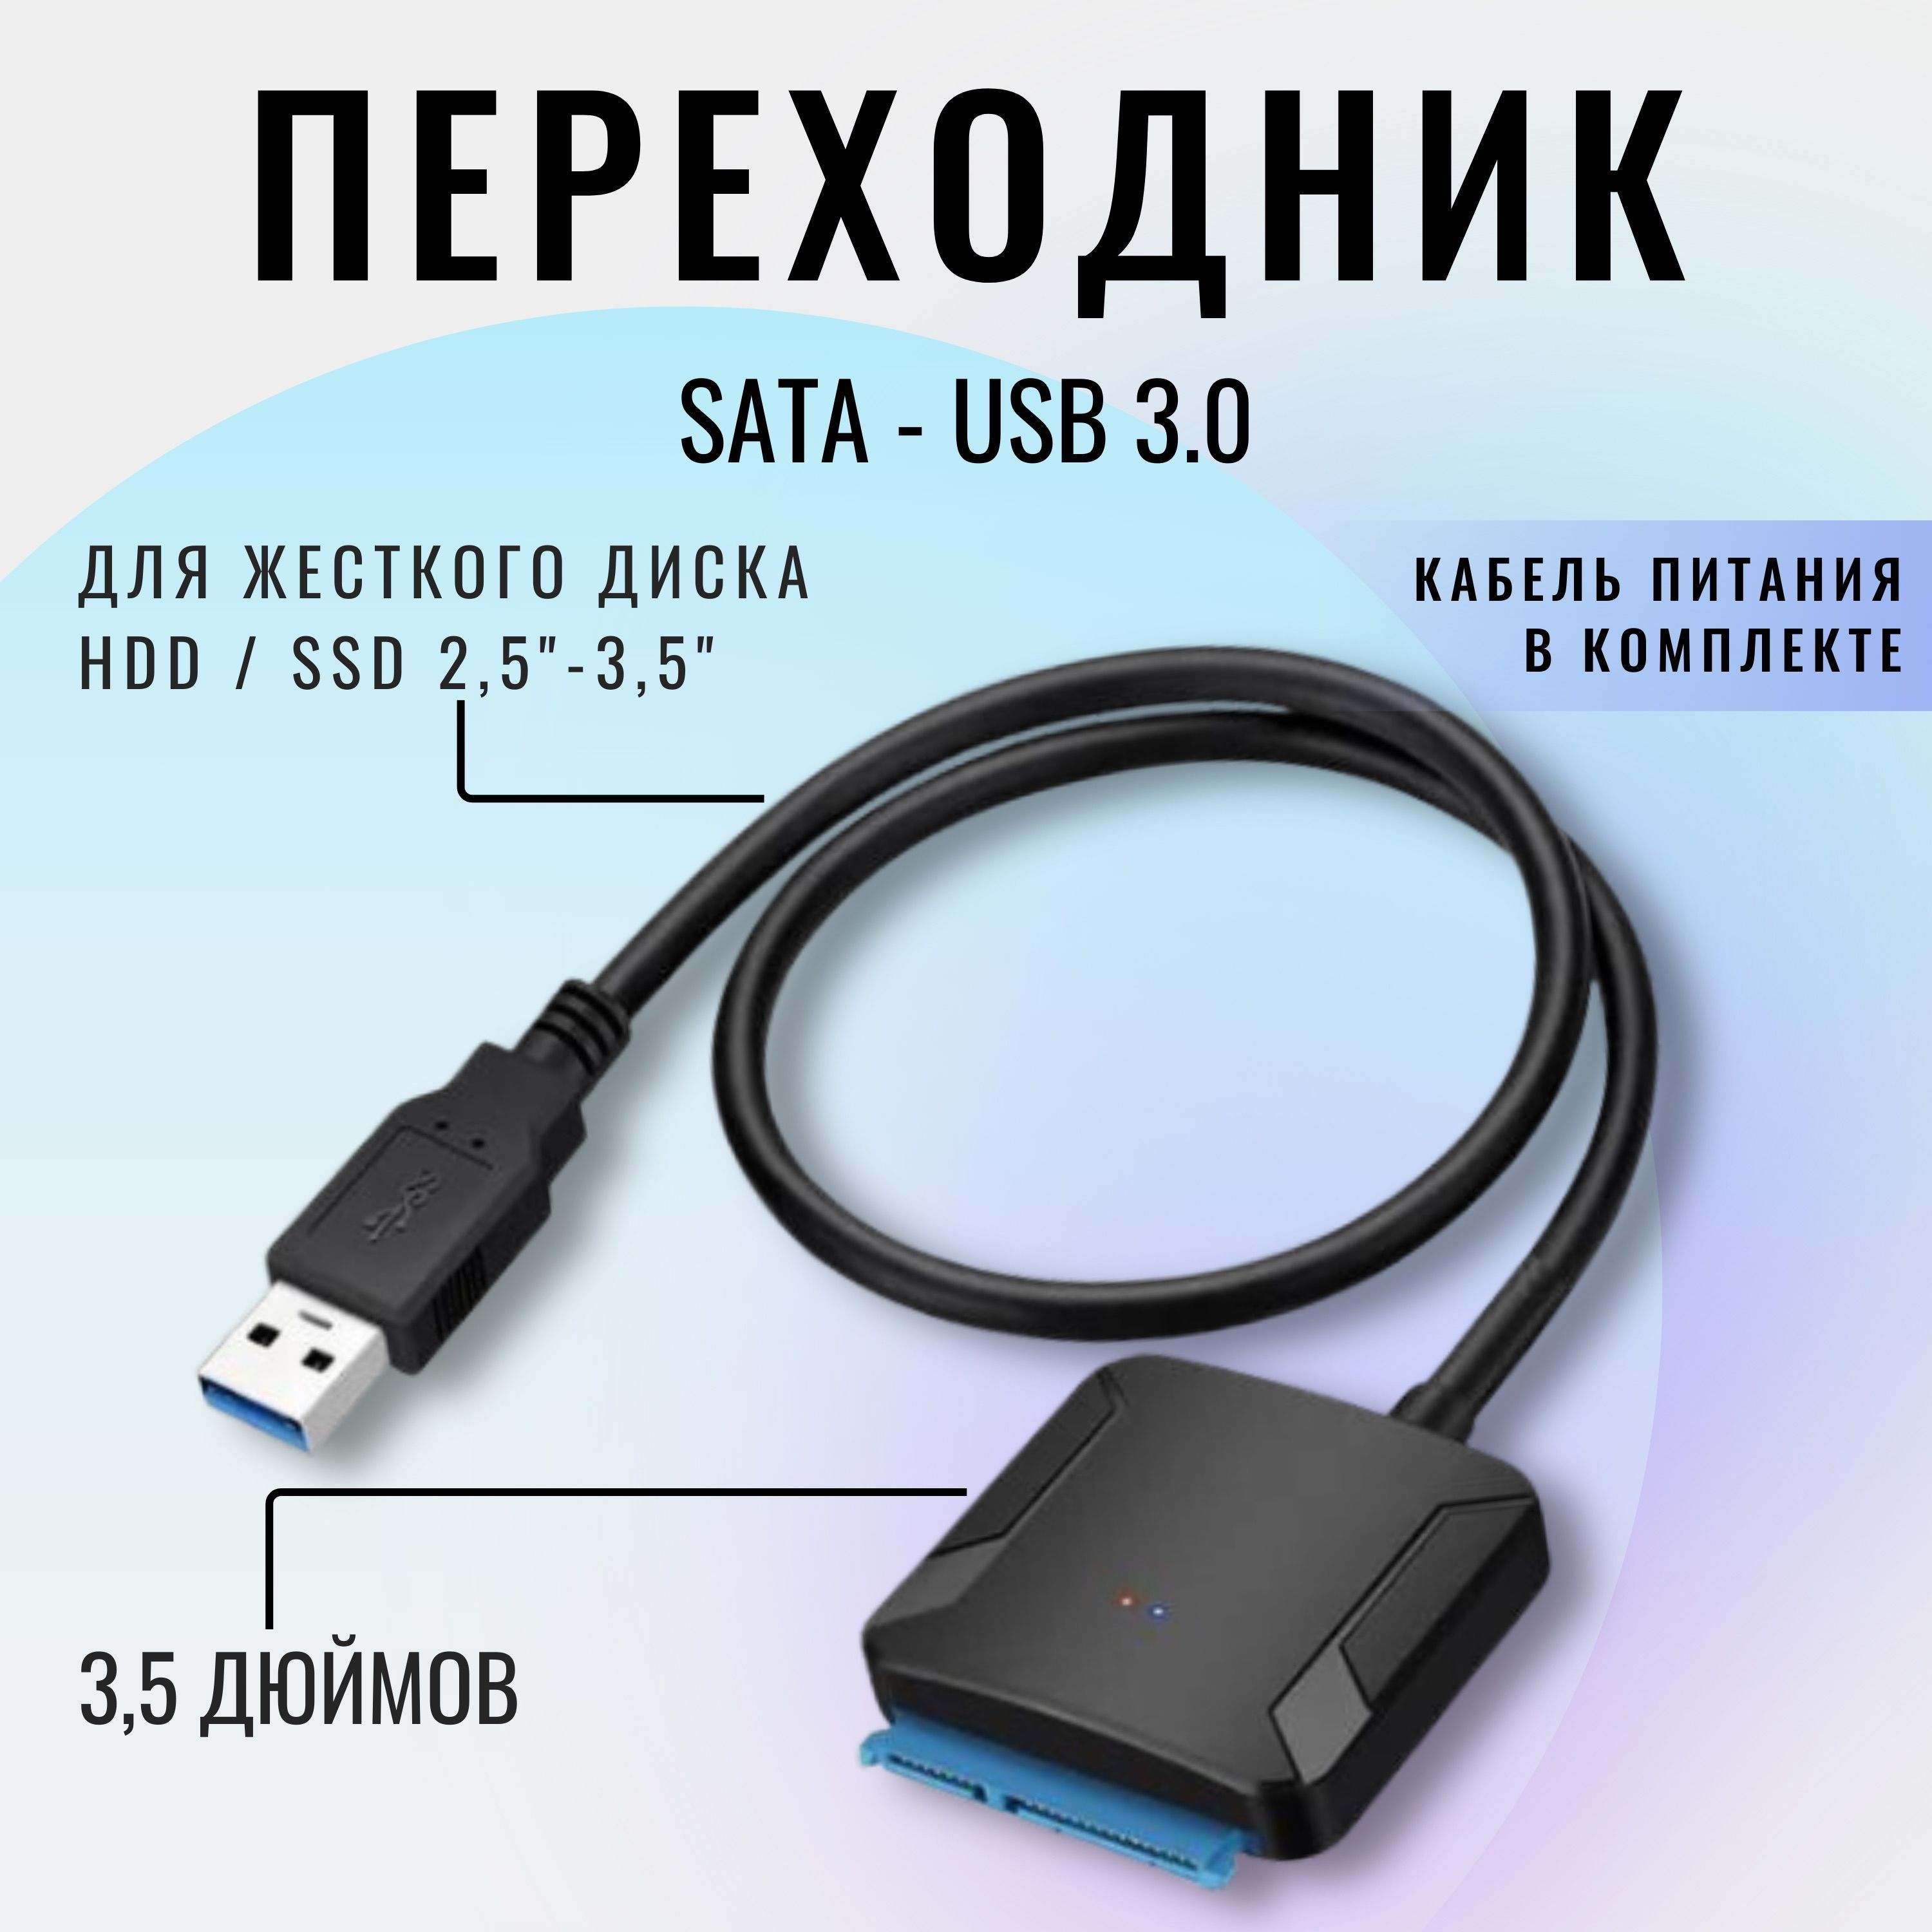 RMB бит и USB носители